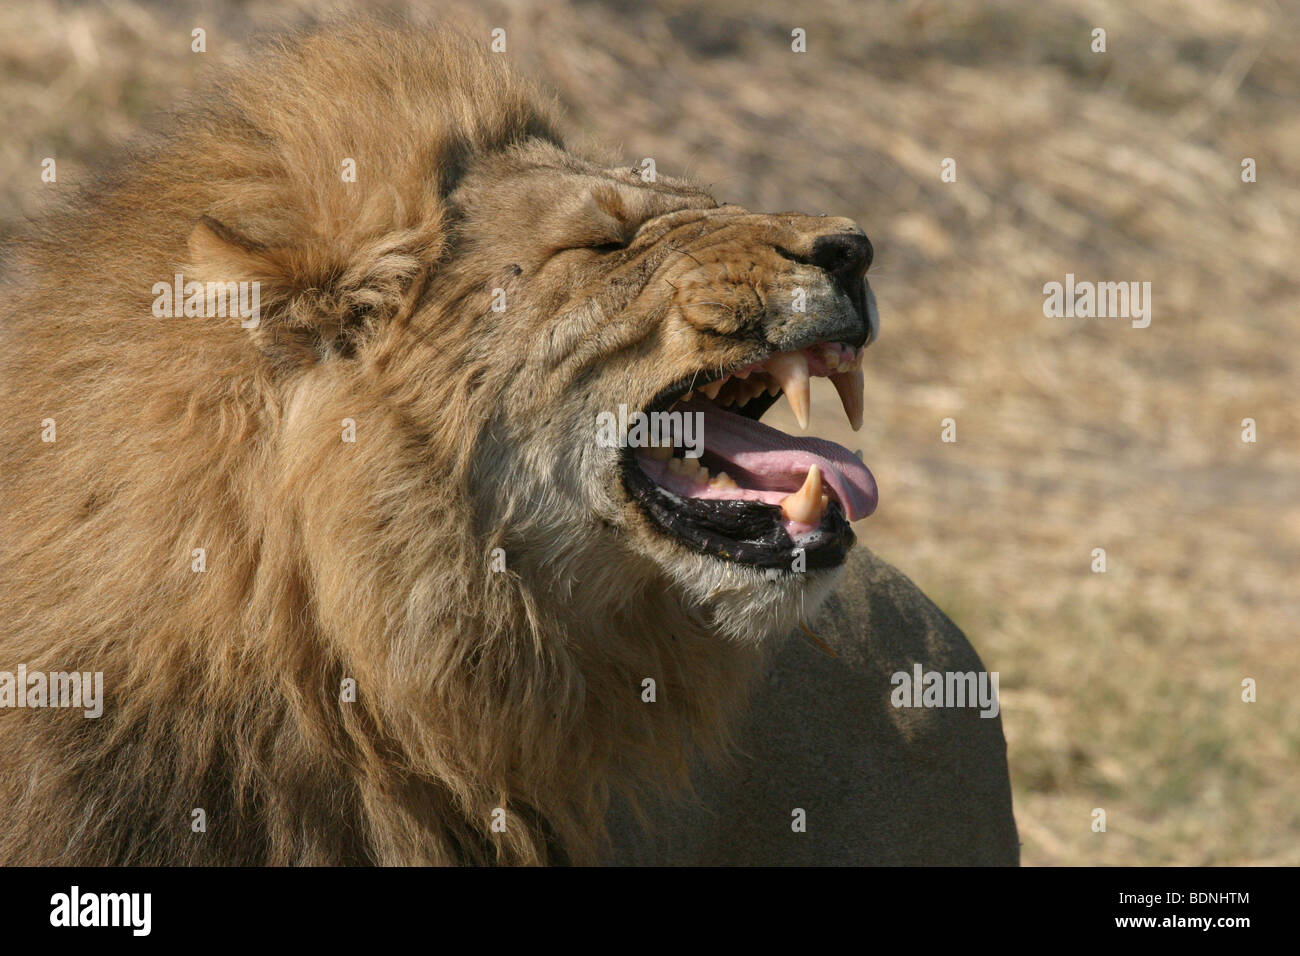 Roaring lion mâle dans le cadre d'un rituel de liaison avec un autre homme avant qu'ils ne les combat avec une femelle d'une autre fierté. Banque D'Images